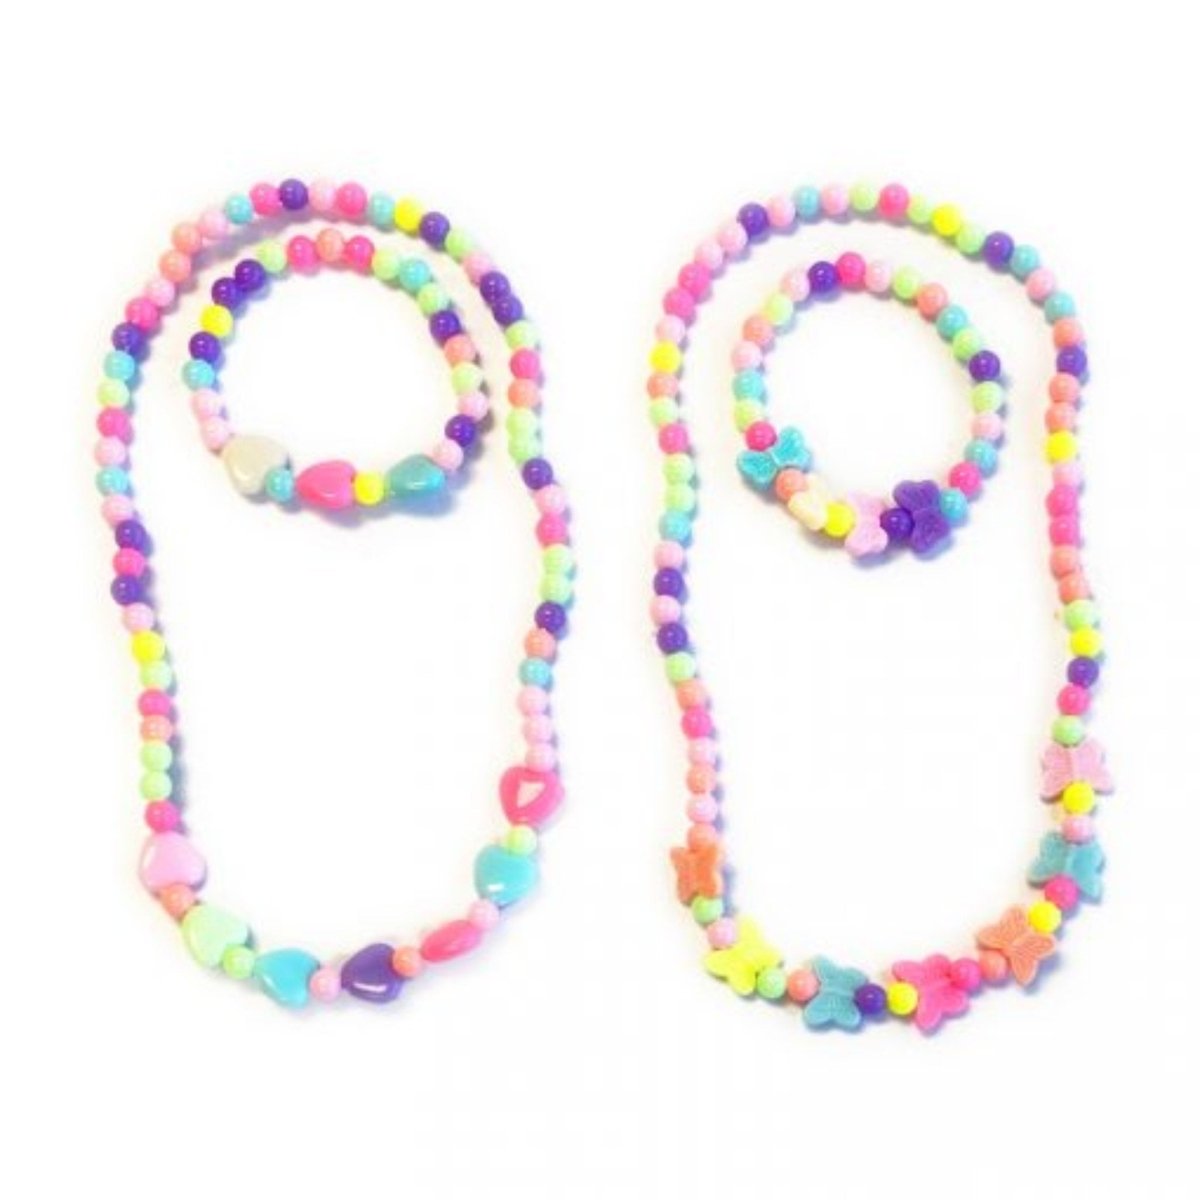 Bracelet & Necklace Set - Kids Party Craft